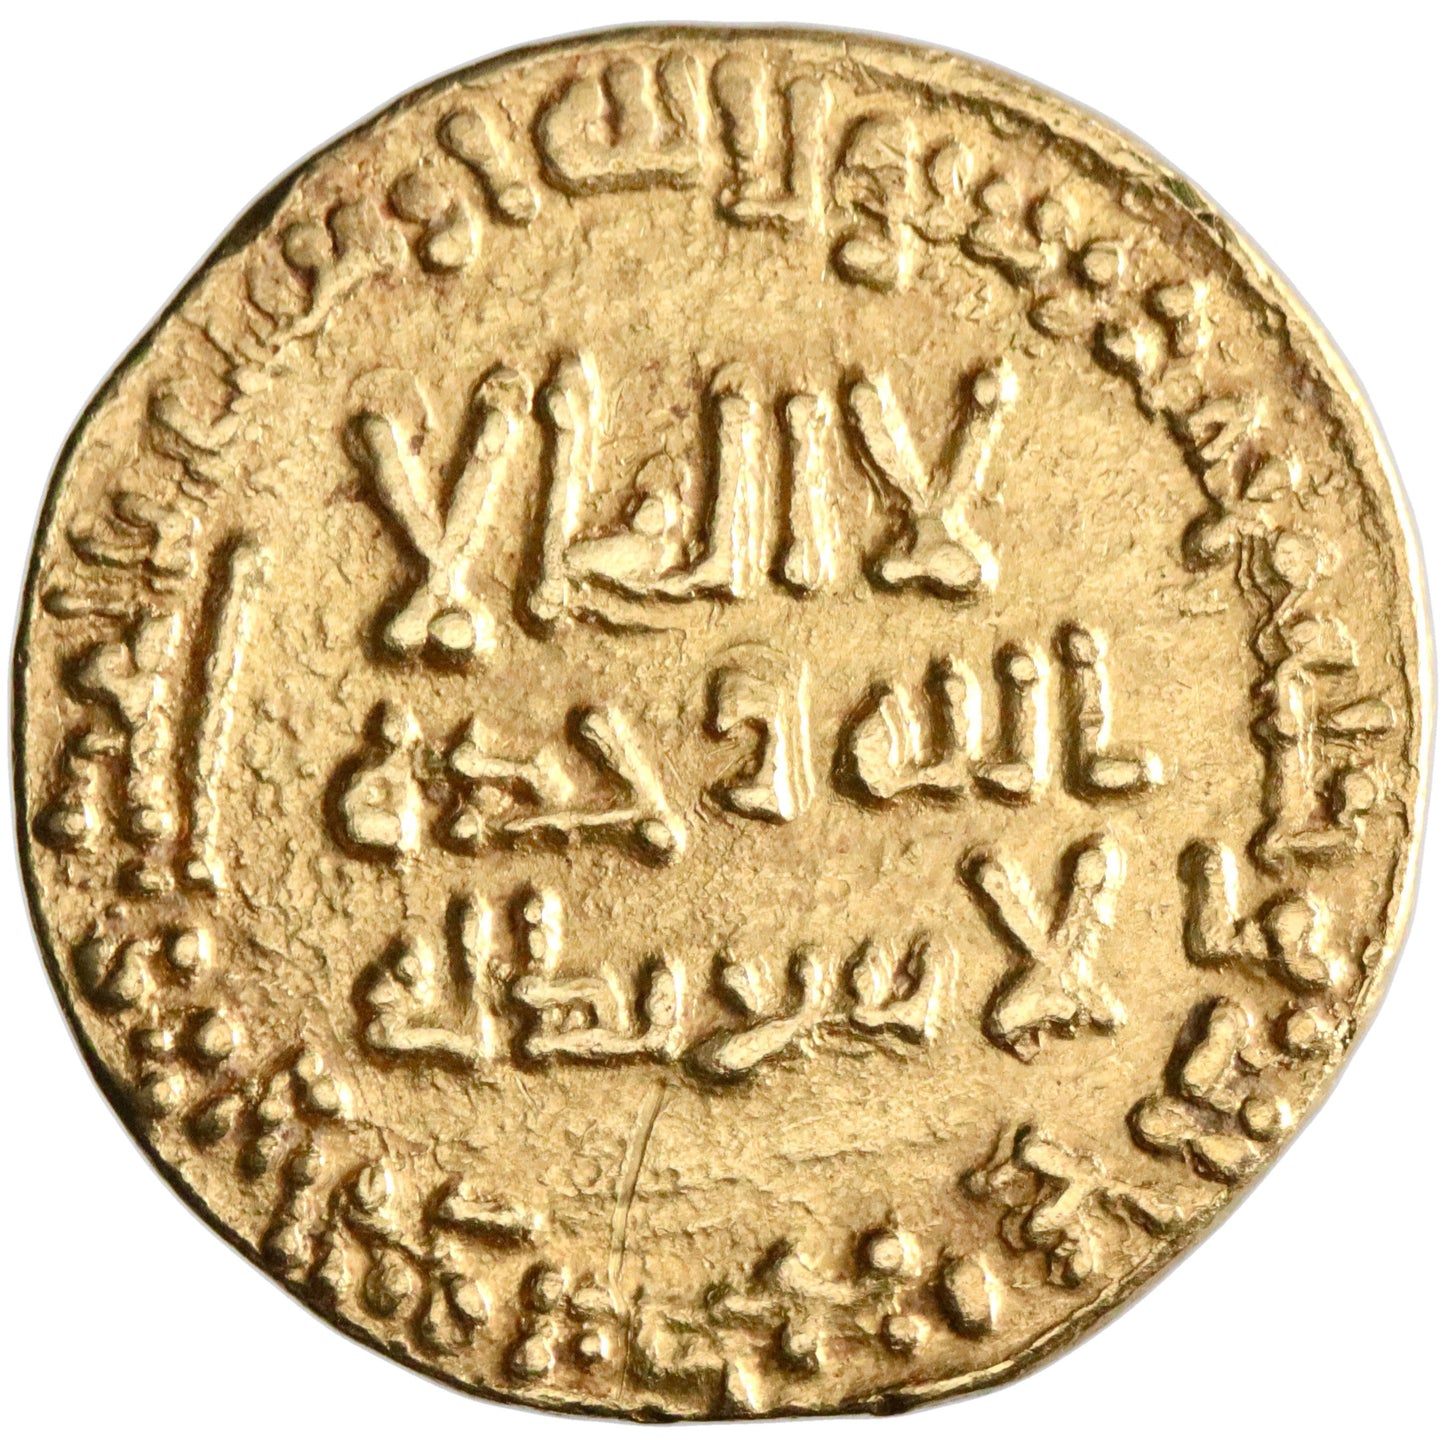 Abbasid, al-Mansur, gold dinar, AH 143